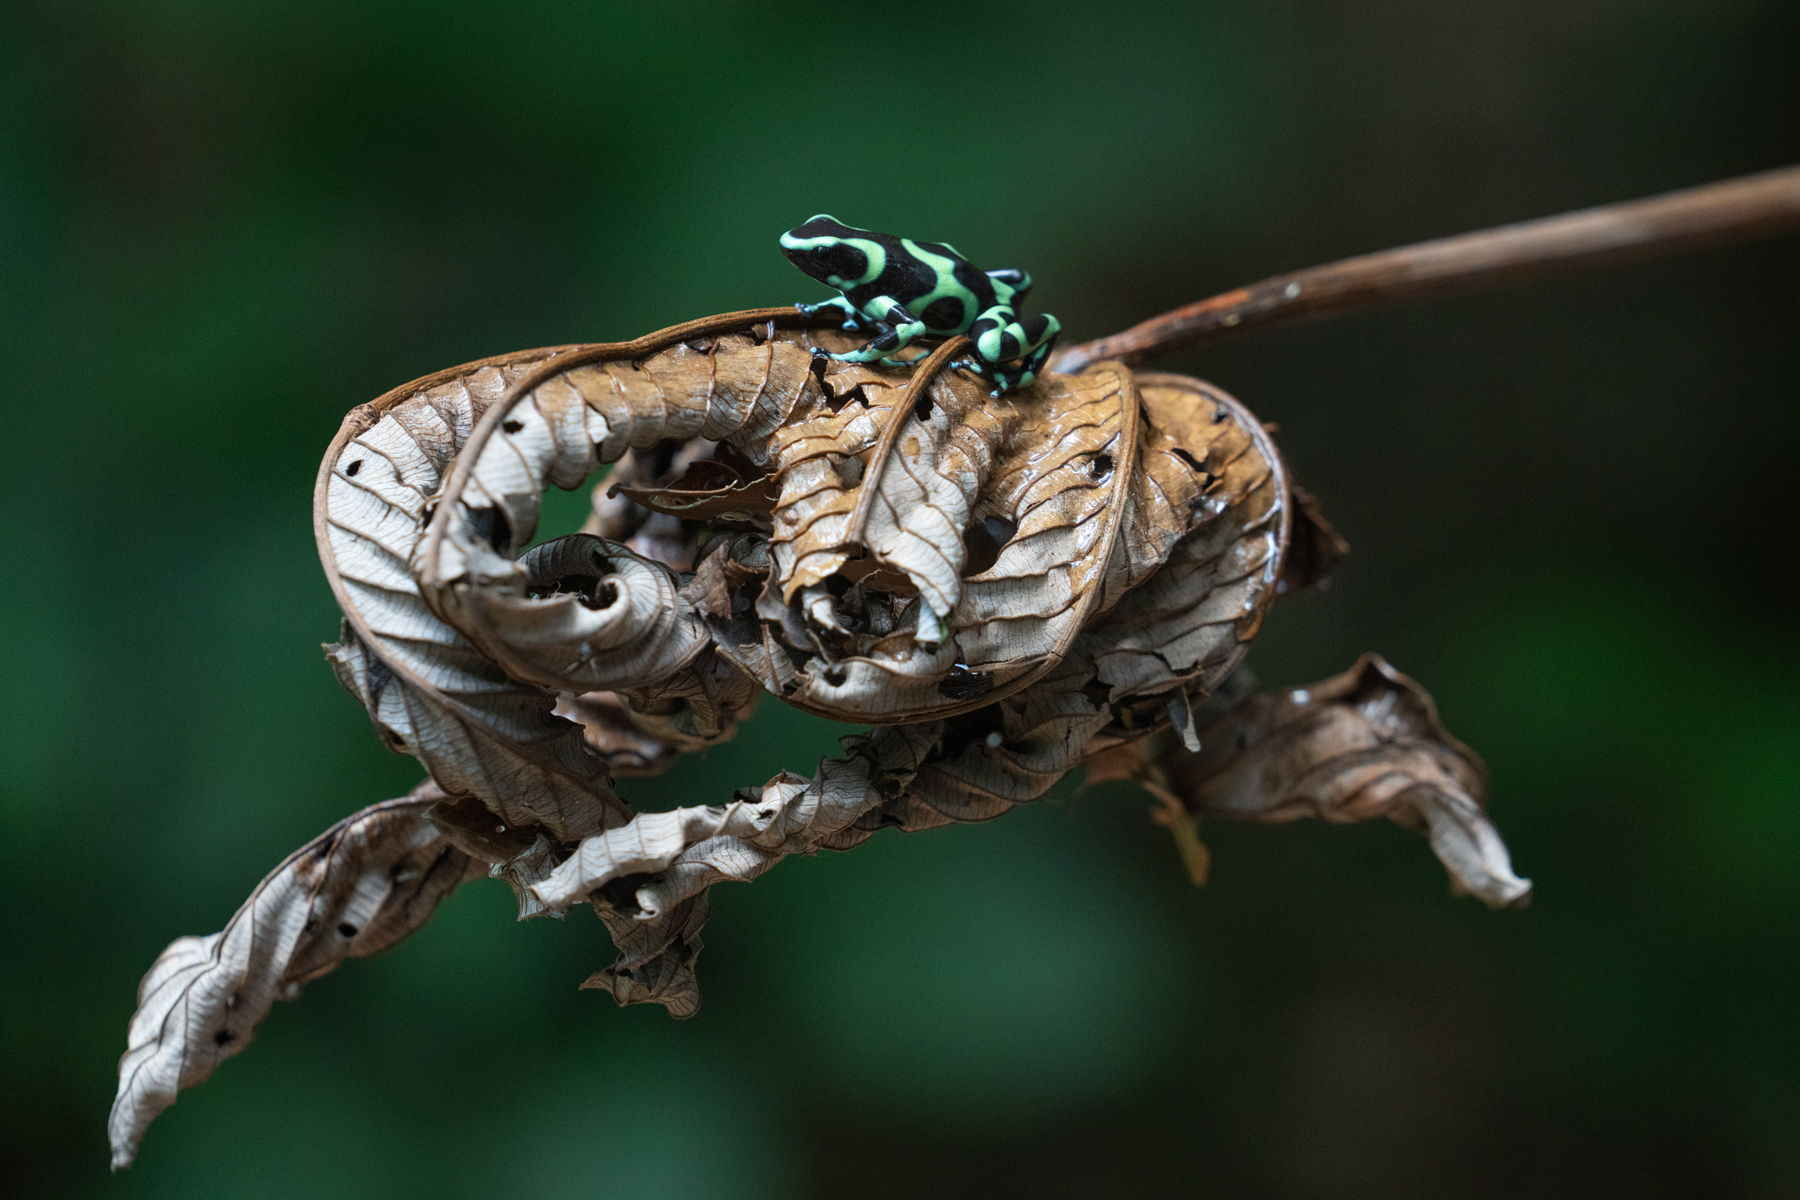 A Green & Black Poison Dart Frog sitting on a dead Cecropia leaf (image by Inger Vandyke)